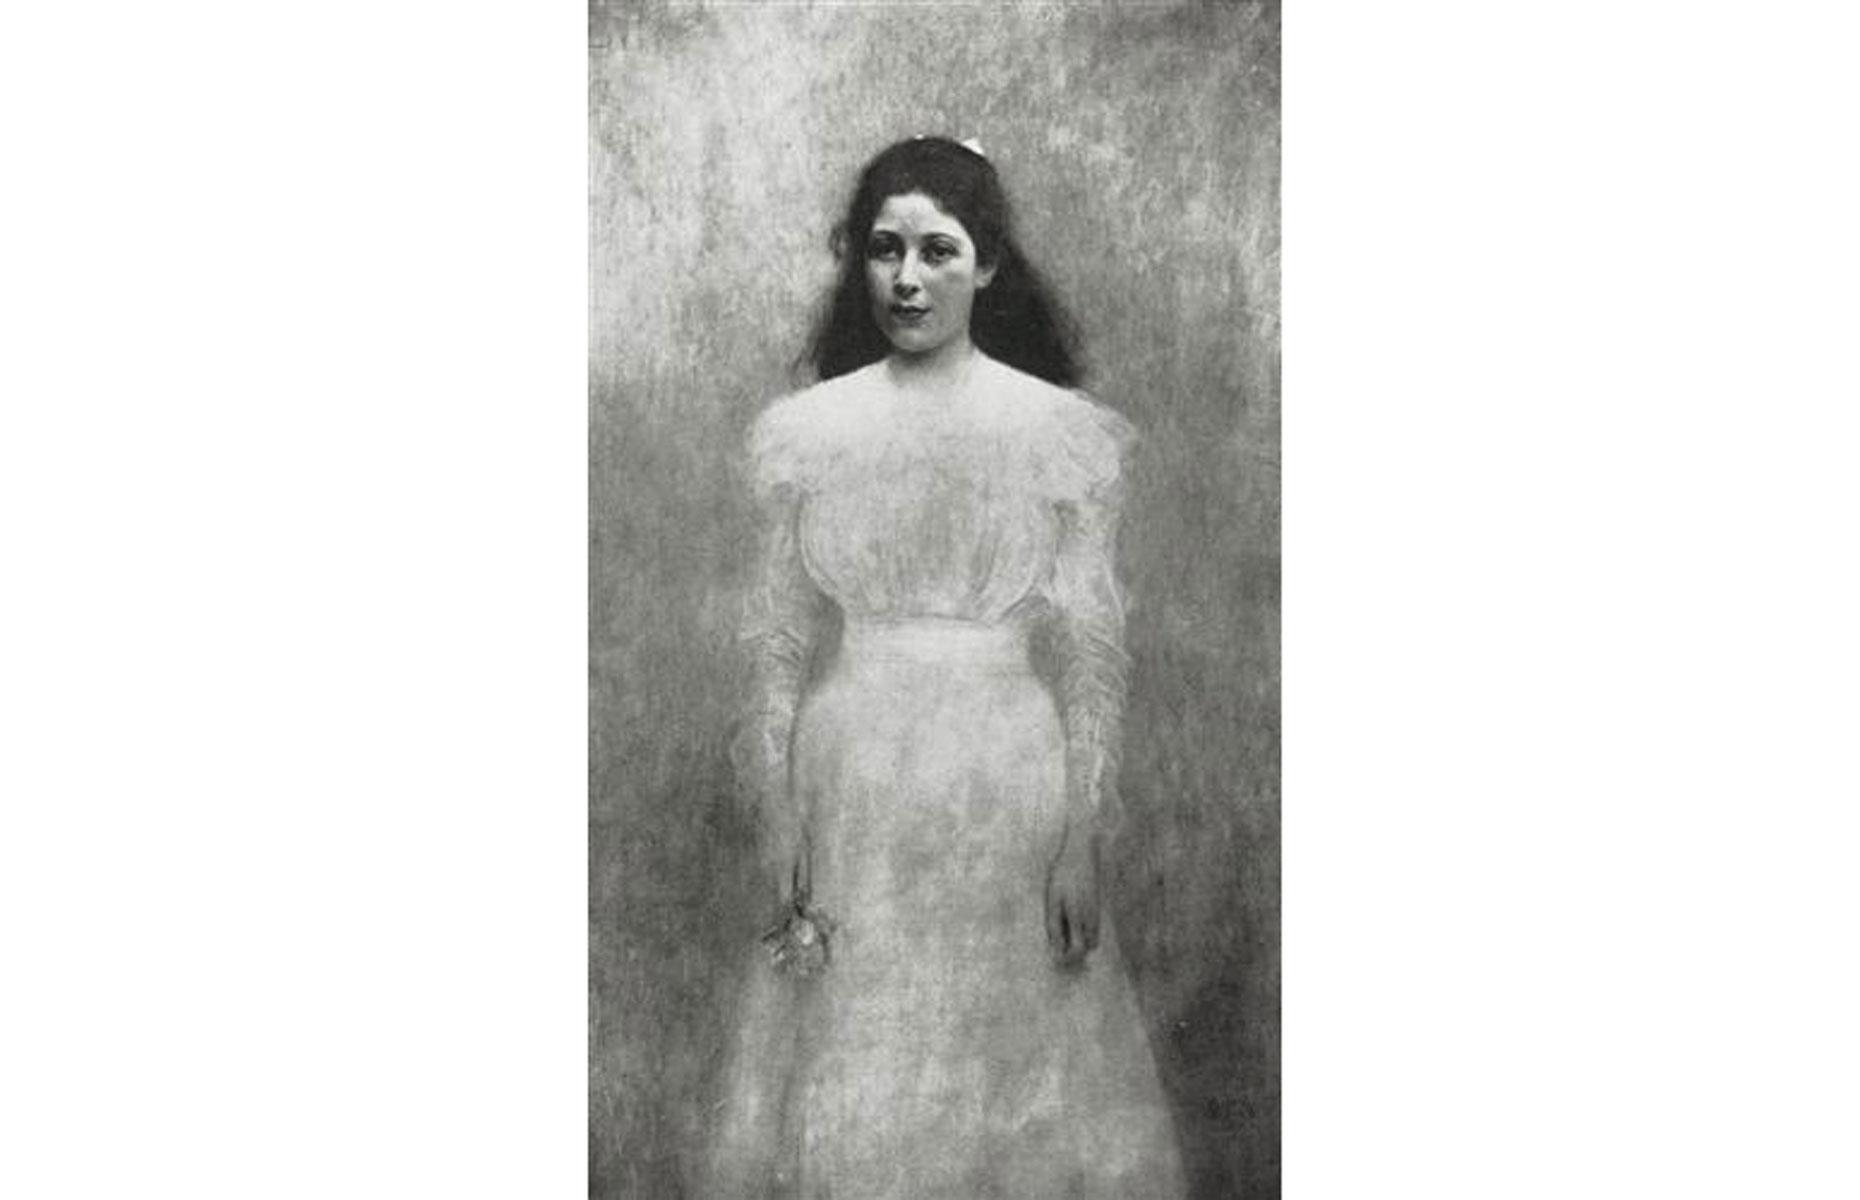 Portrait of Trude Steiner by Gustav Klimt 